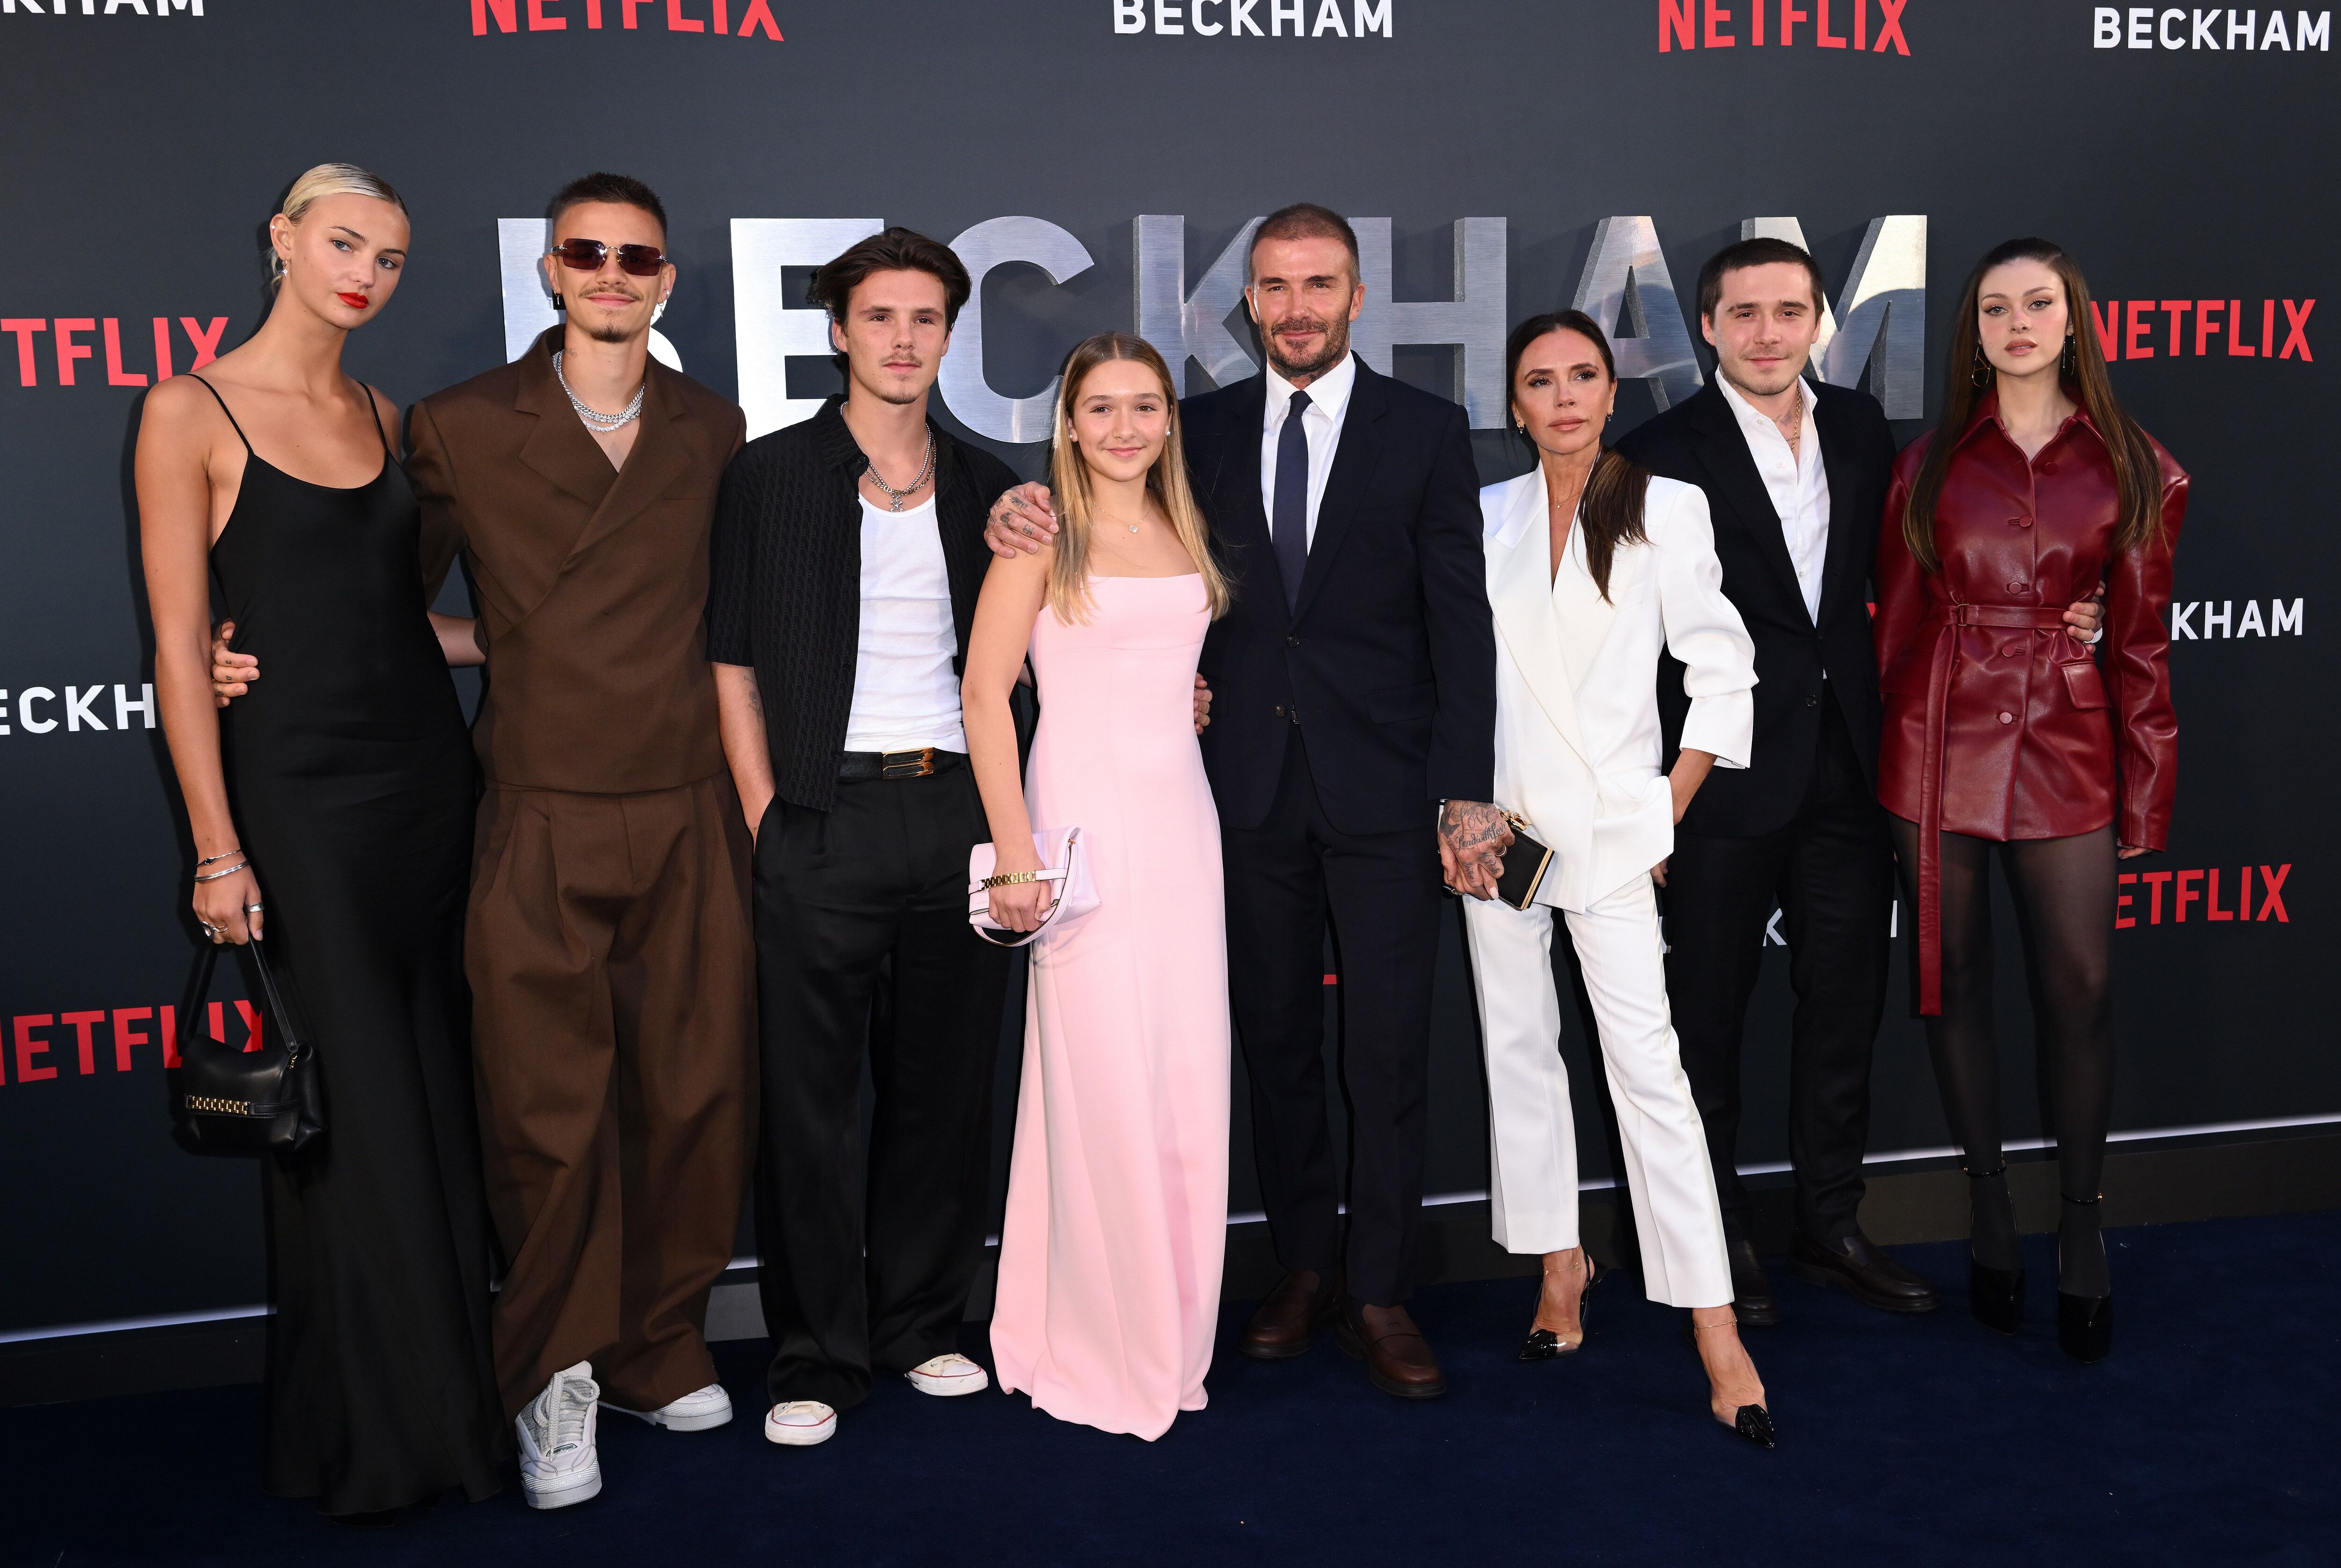 La familia Beckham al completo. De izquierda a derecha: Mia Regan (exnovia de Romeo), Romeo Beckham, Cruz Beckham, Harper Beckham, David Beckham, Victoria Beckham, Brooklyn Beckham y Nicola Peltz (esposa de Brooklyn) en el estreno de Netflix de 'Beckham', en octubre de 2023 en Londres.